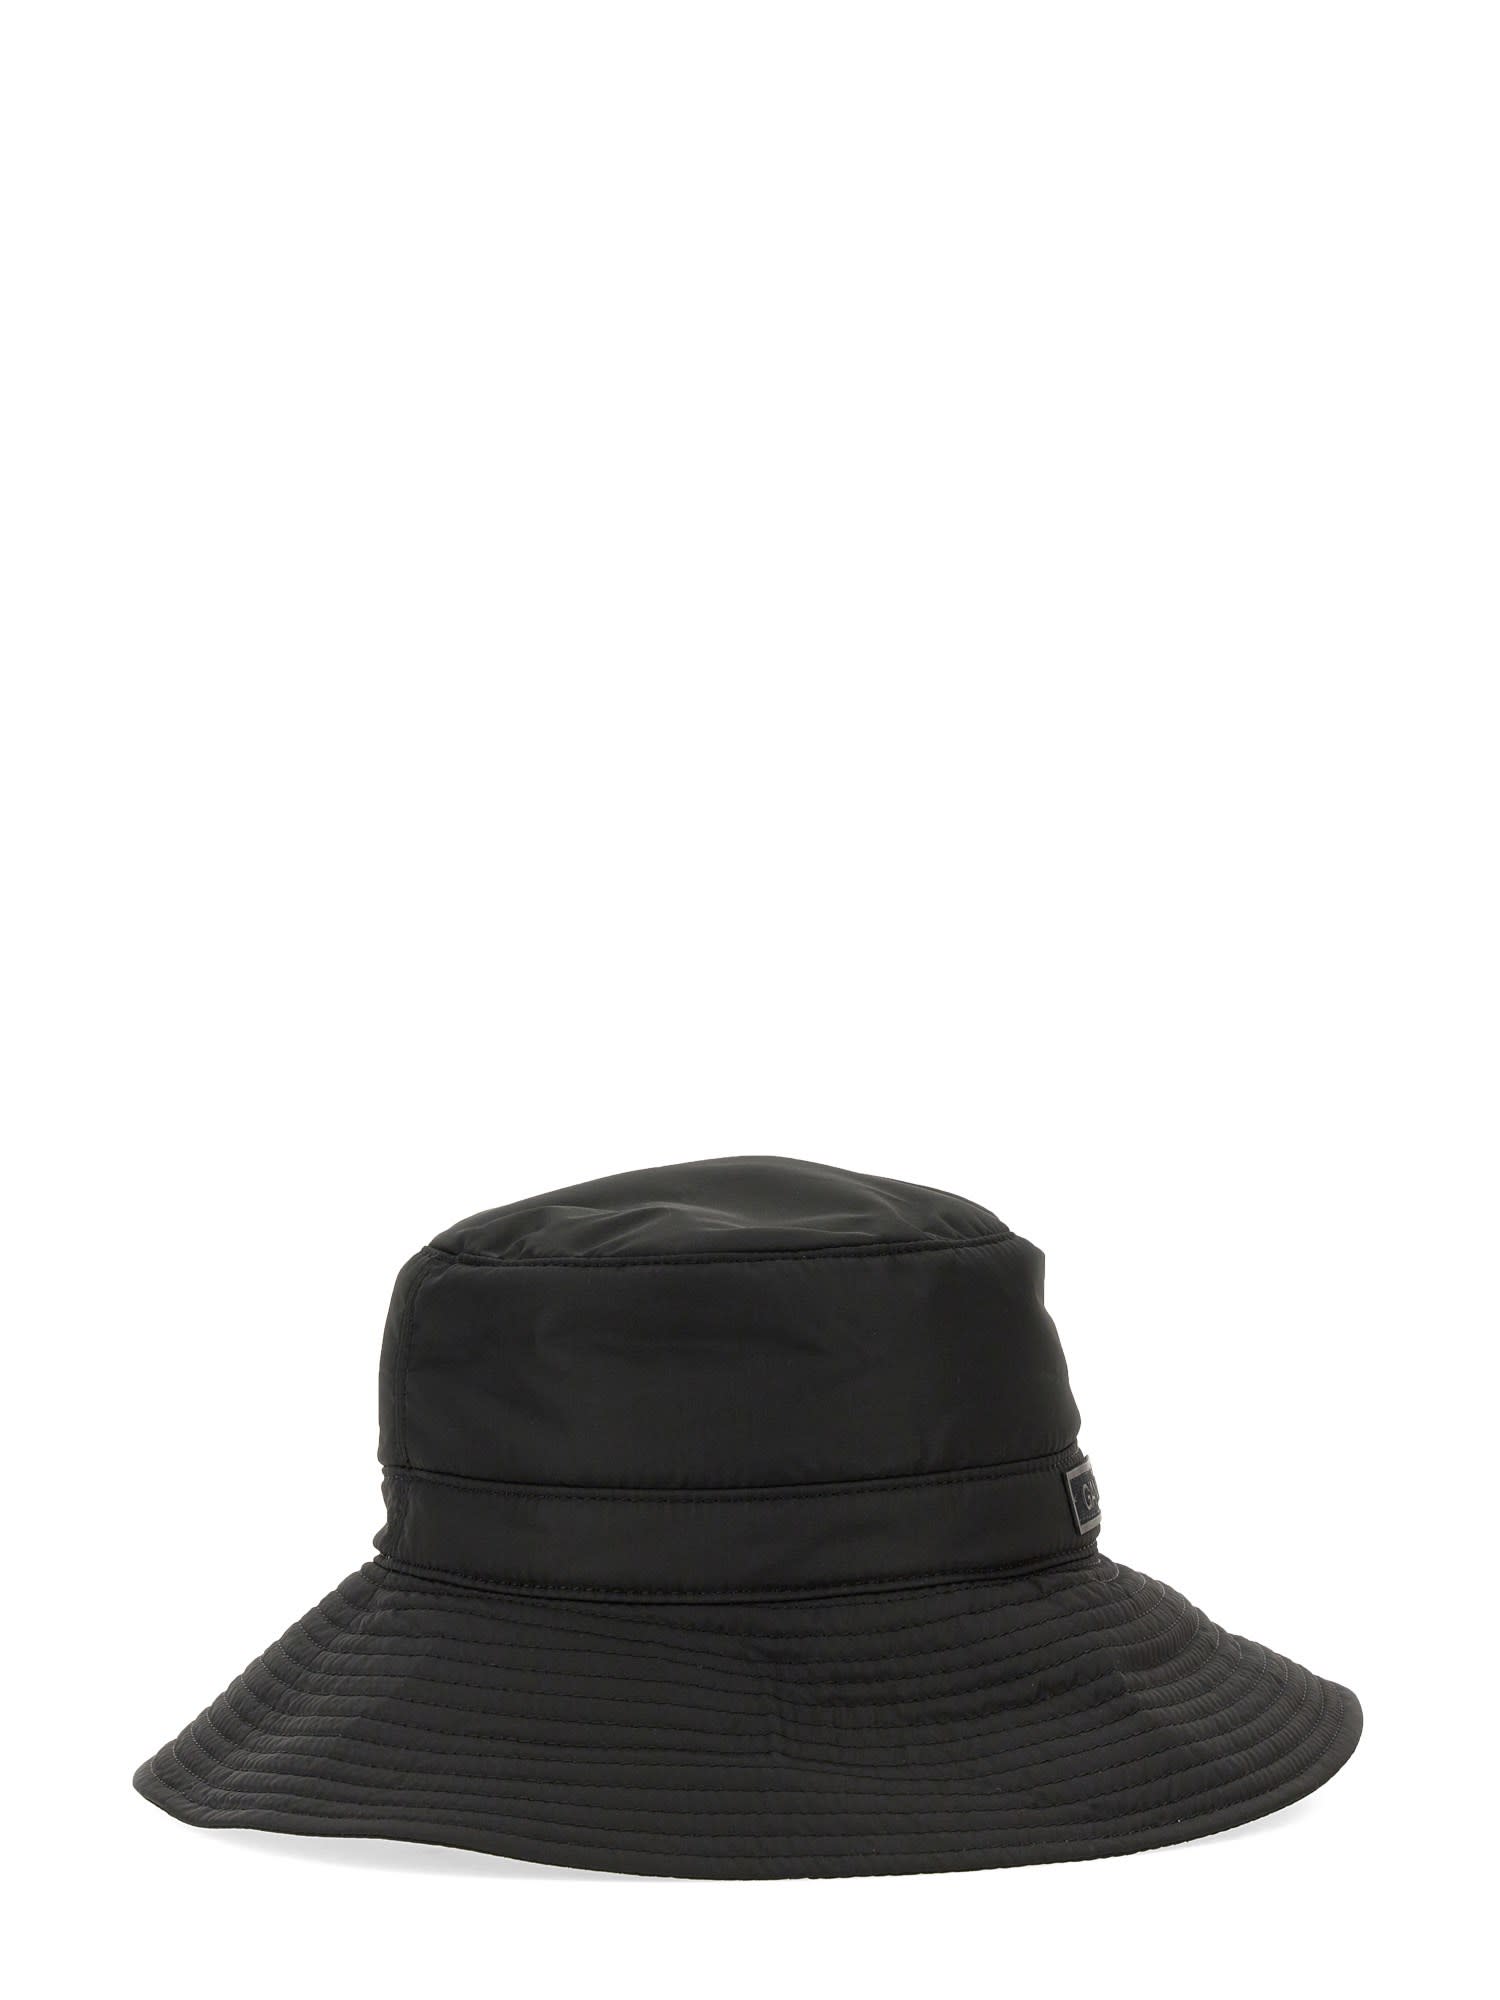 Shop Ganni Bucket Hat With Logo In Nero